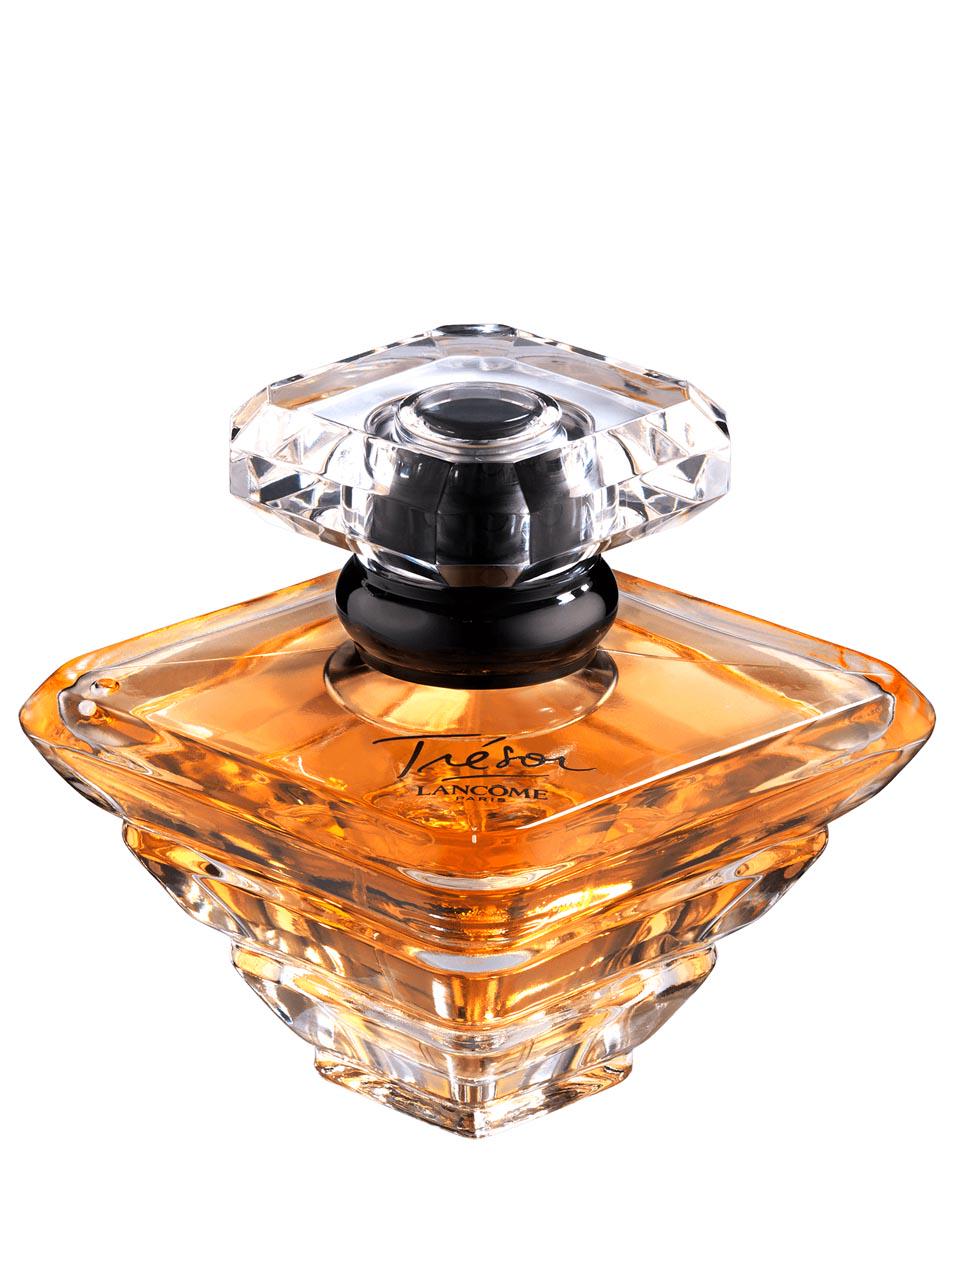 Lancôme Trésor Eau de Parfum 100 ml | Frankfurt Airport Online